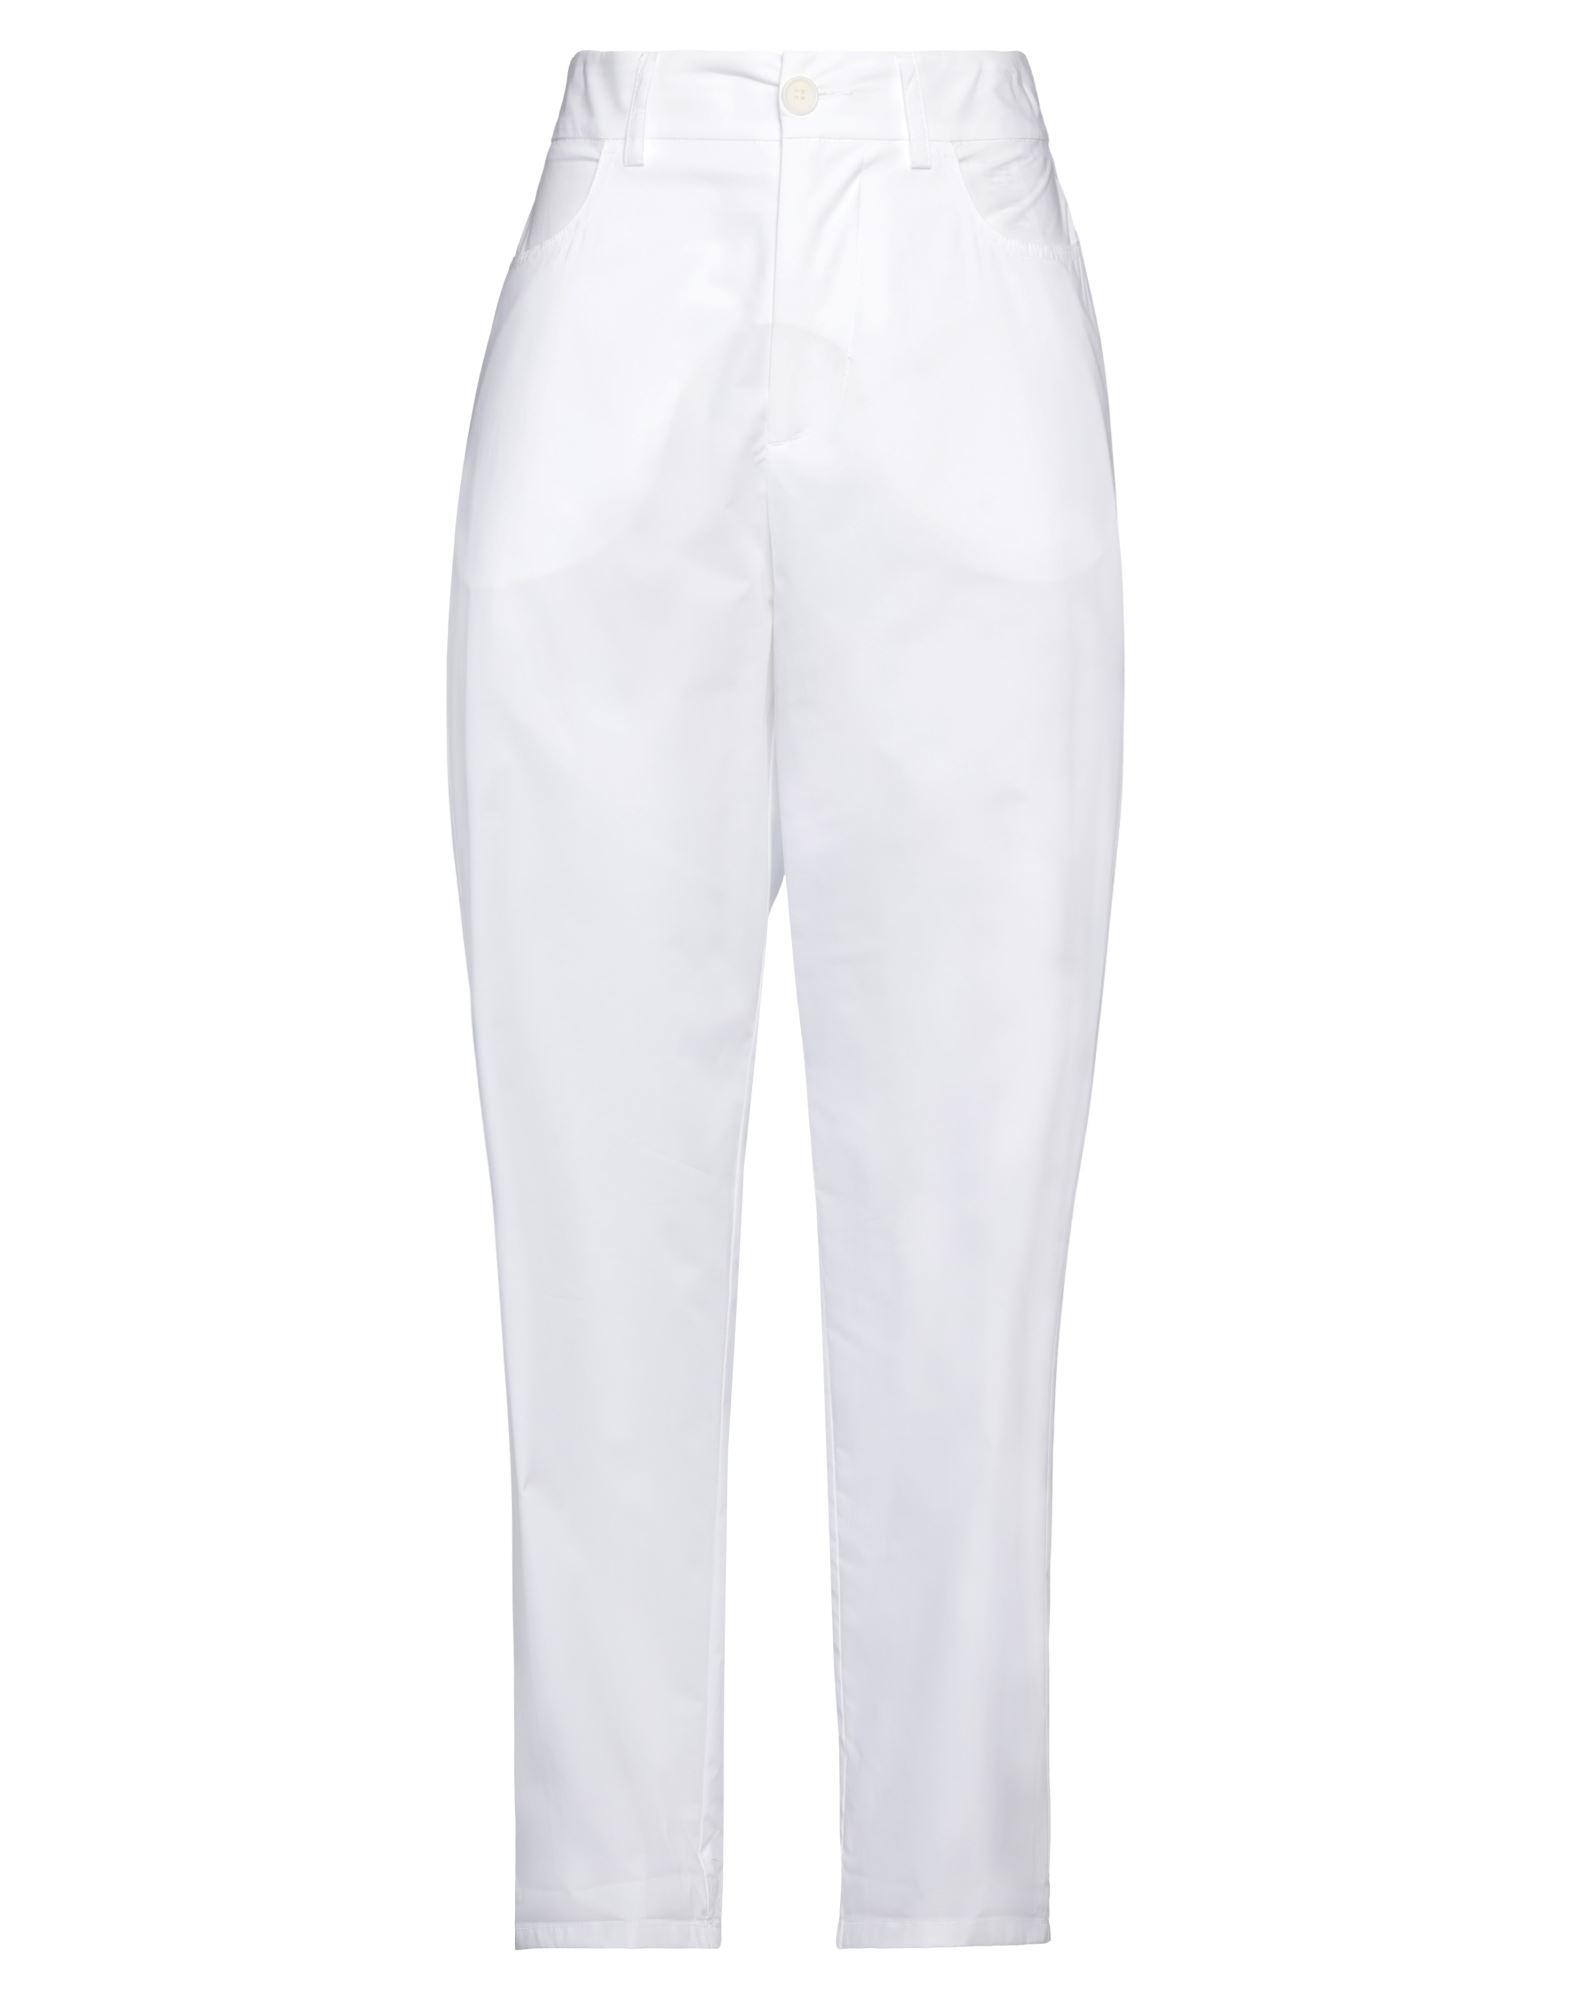 Momoní Woman Pants White Size 6 Cotton